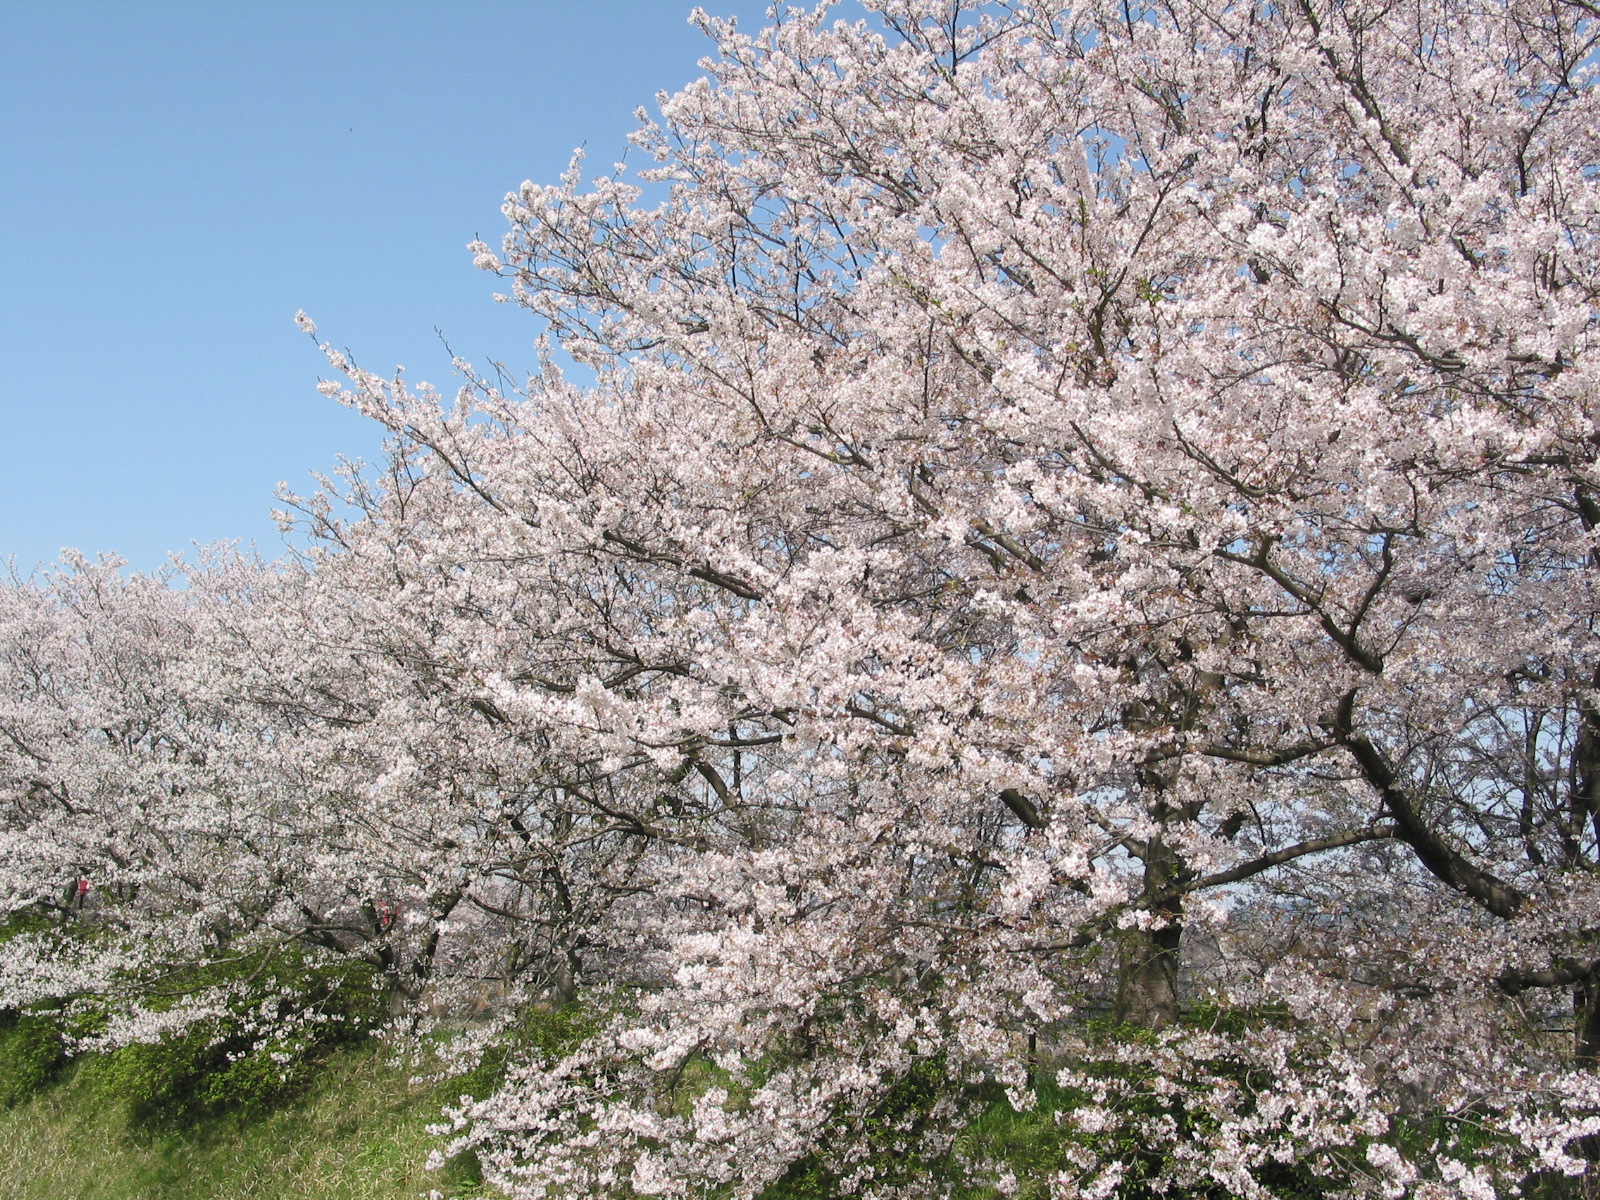 桜の枝に桃色の花が満開に咲いている様子を見上げるように撮影した写真